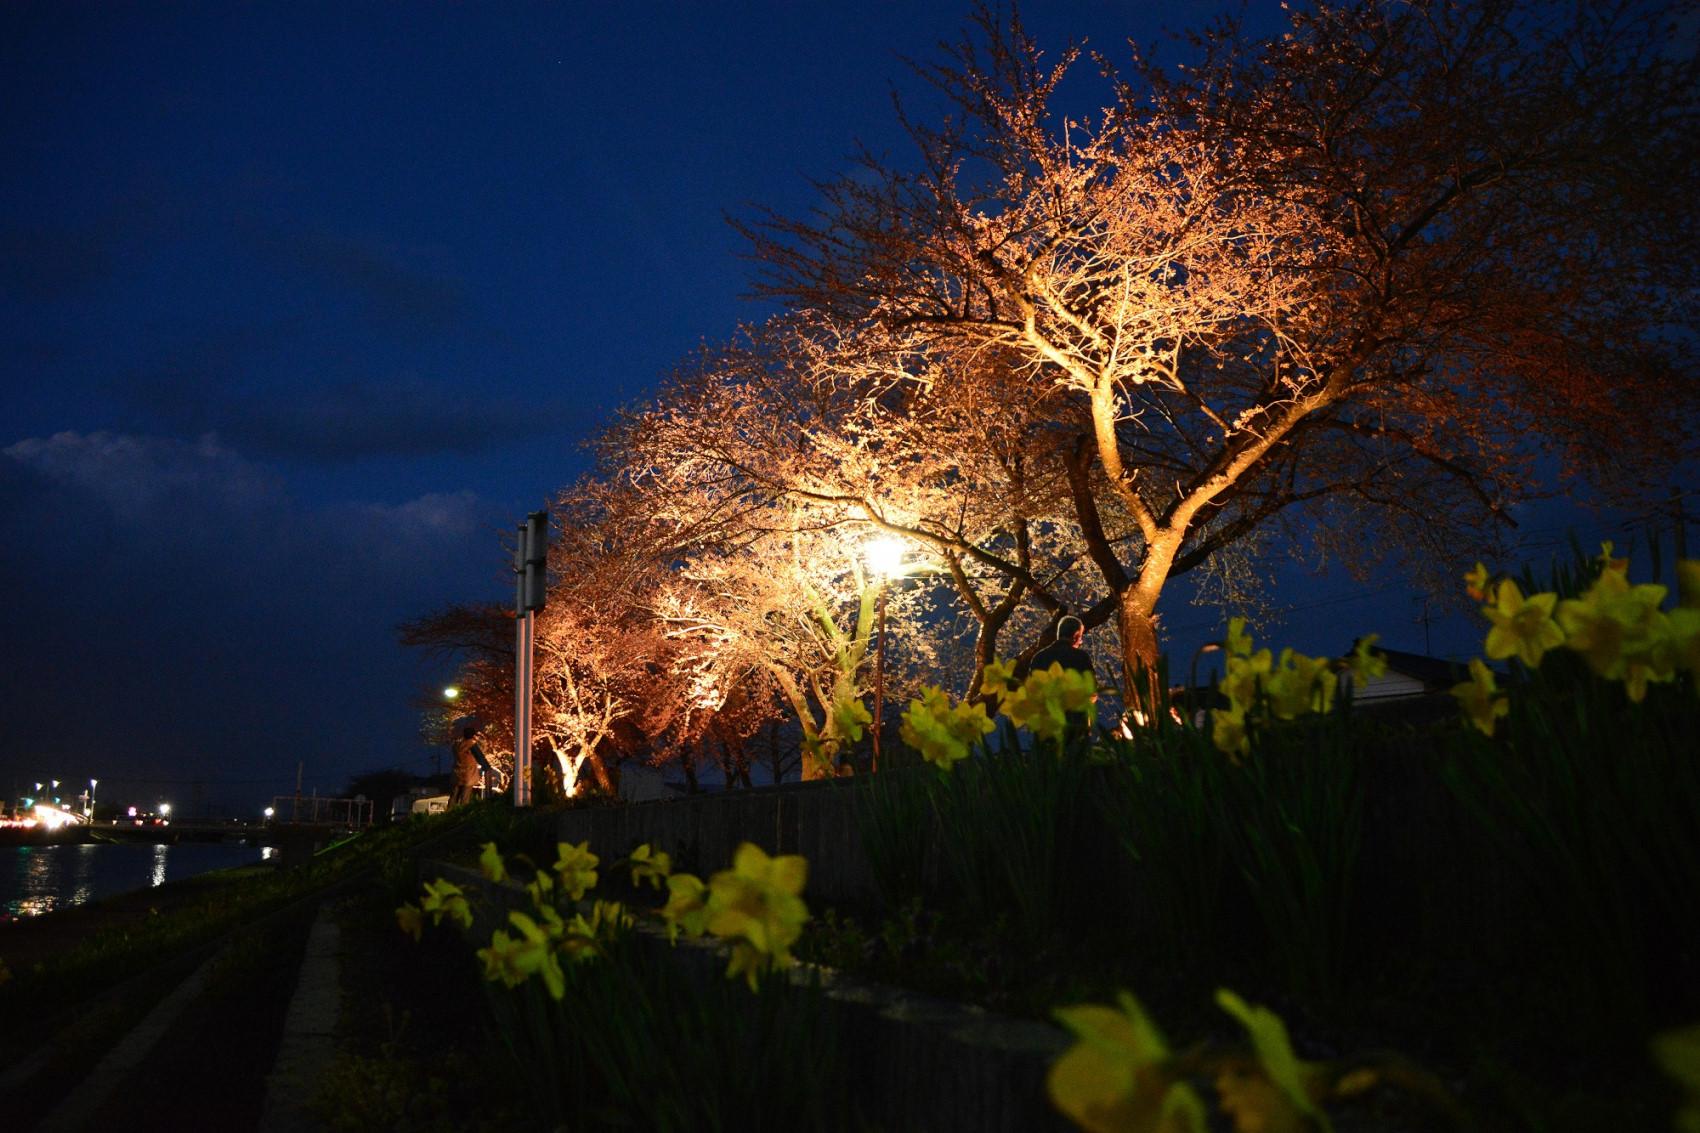 パナソニックが山形県酒田市でLED照明による「桜並木ライトアップ」実証試験を開始 | 企業・法人向けソリューション | 製品・サービス